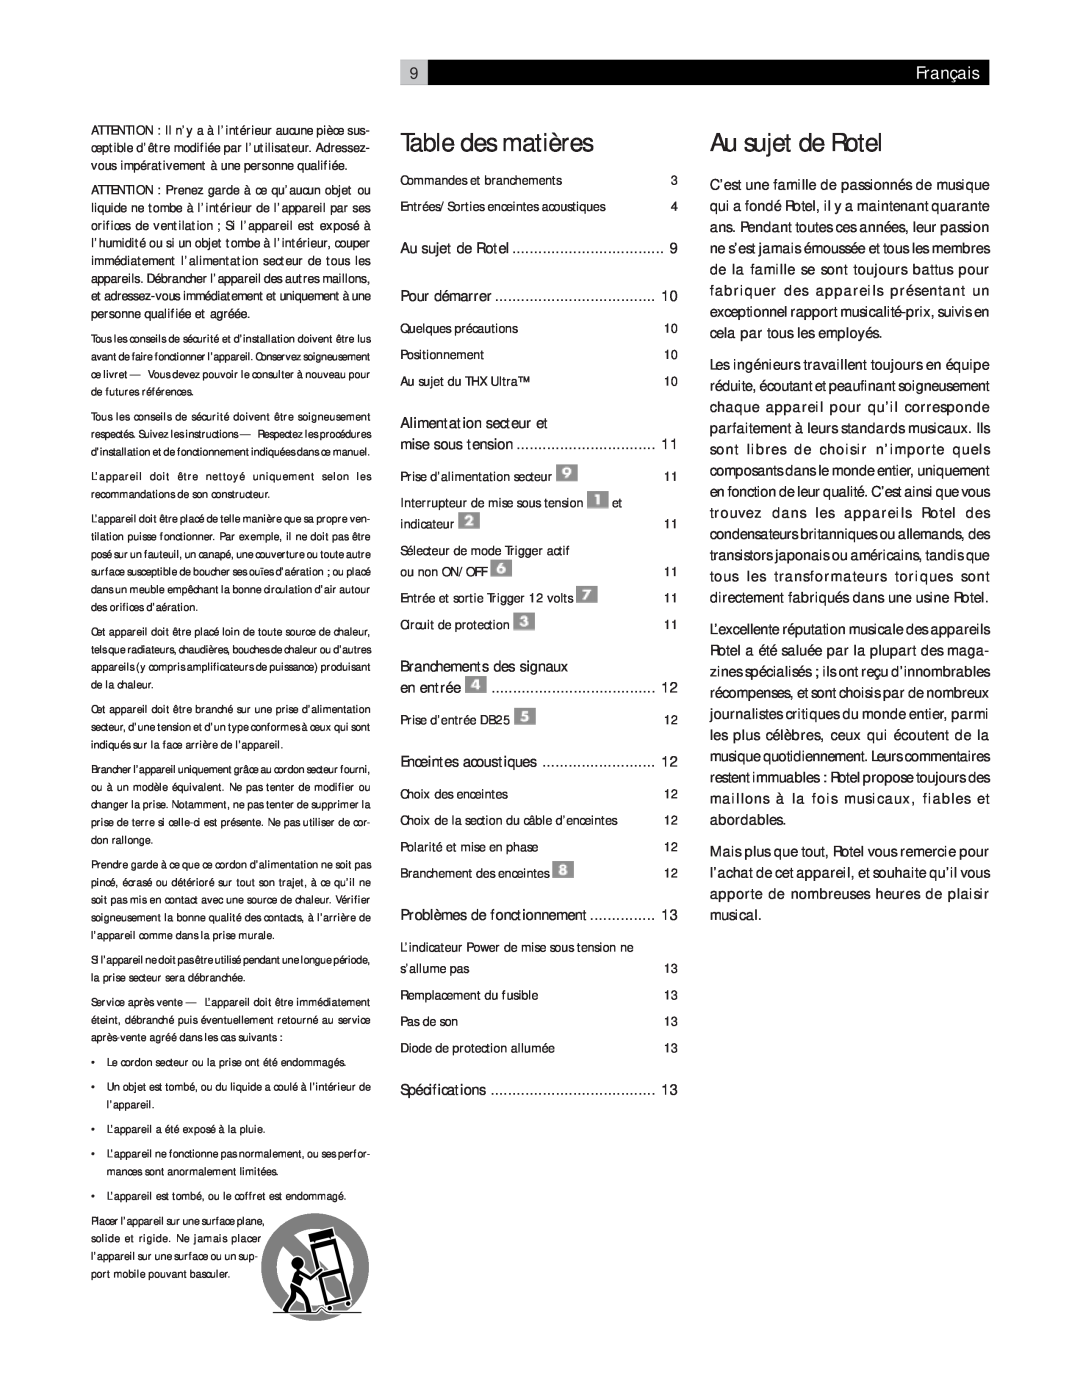 Rotel RMB-1075 owner manual Au sujet de Rotel, Table des matières, 9Français, Alimentation secteur et 